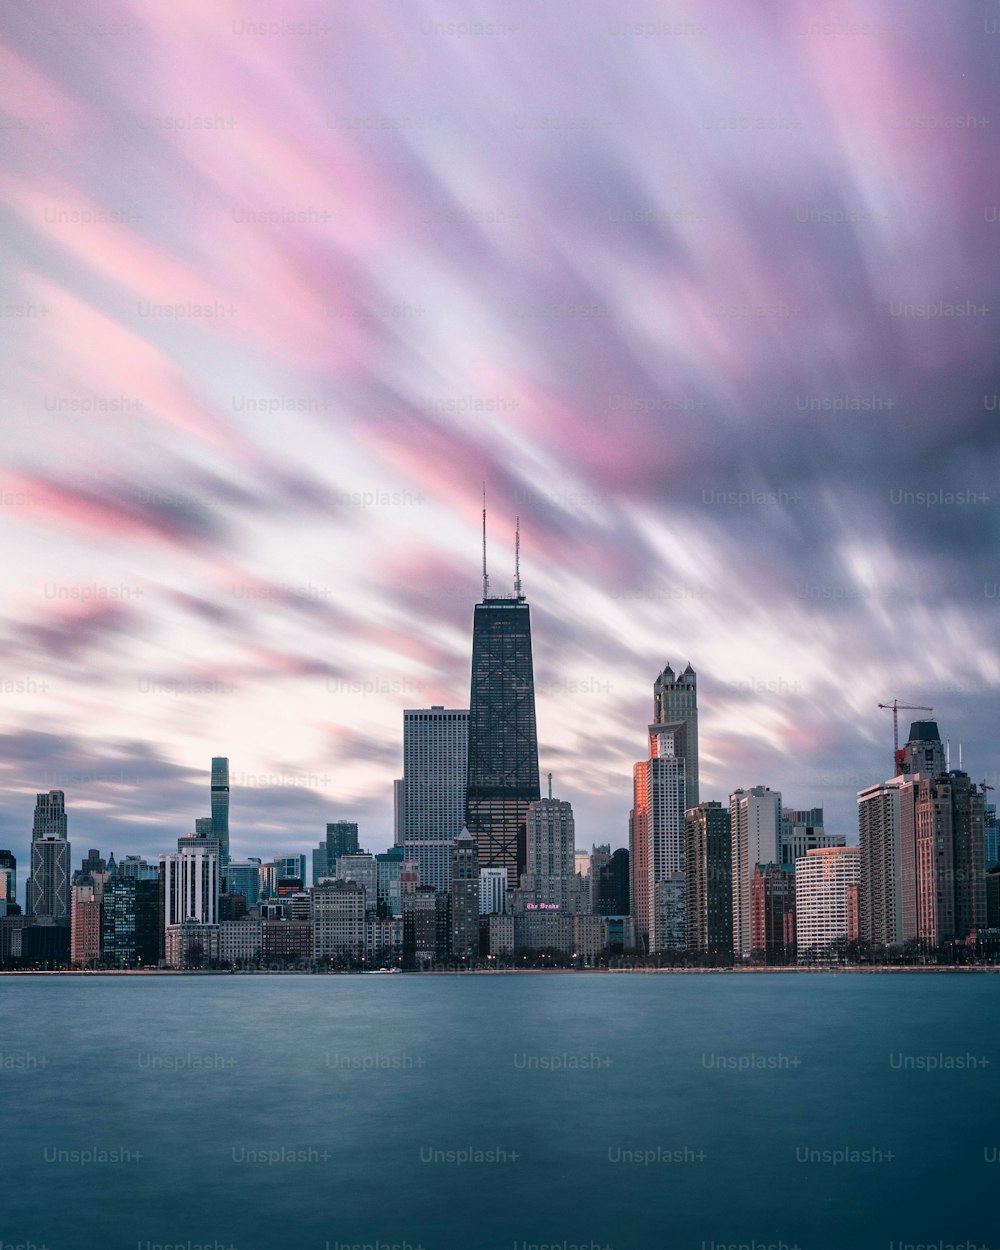 Una vista impresionante de la Torre Willis en Chicago con agua azul silenciosa bajo un cielo nublado rosado al amanecer